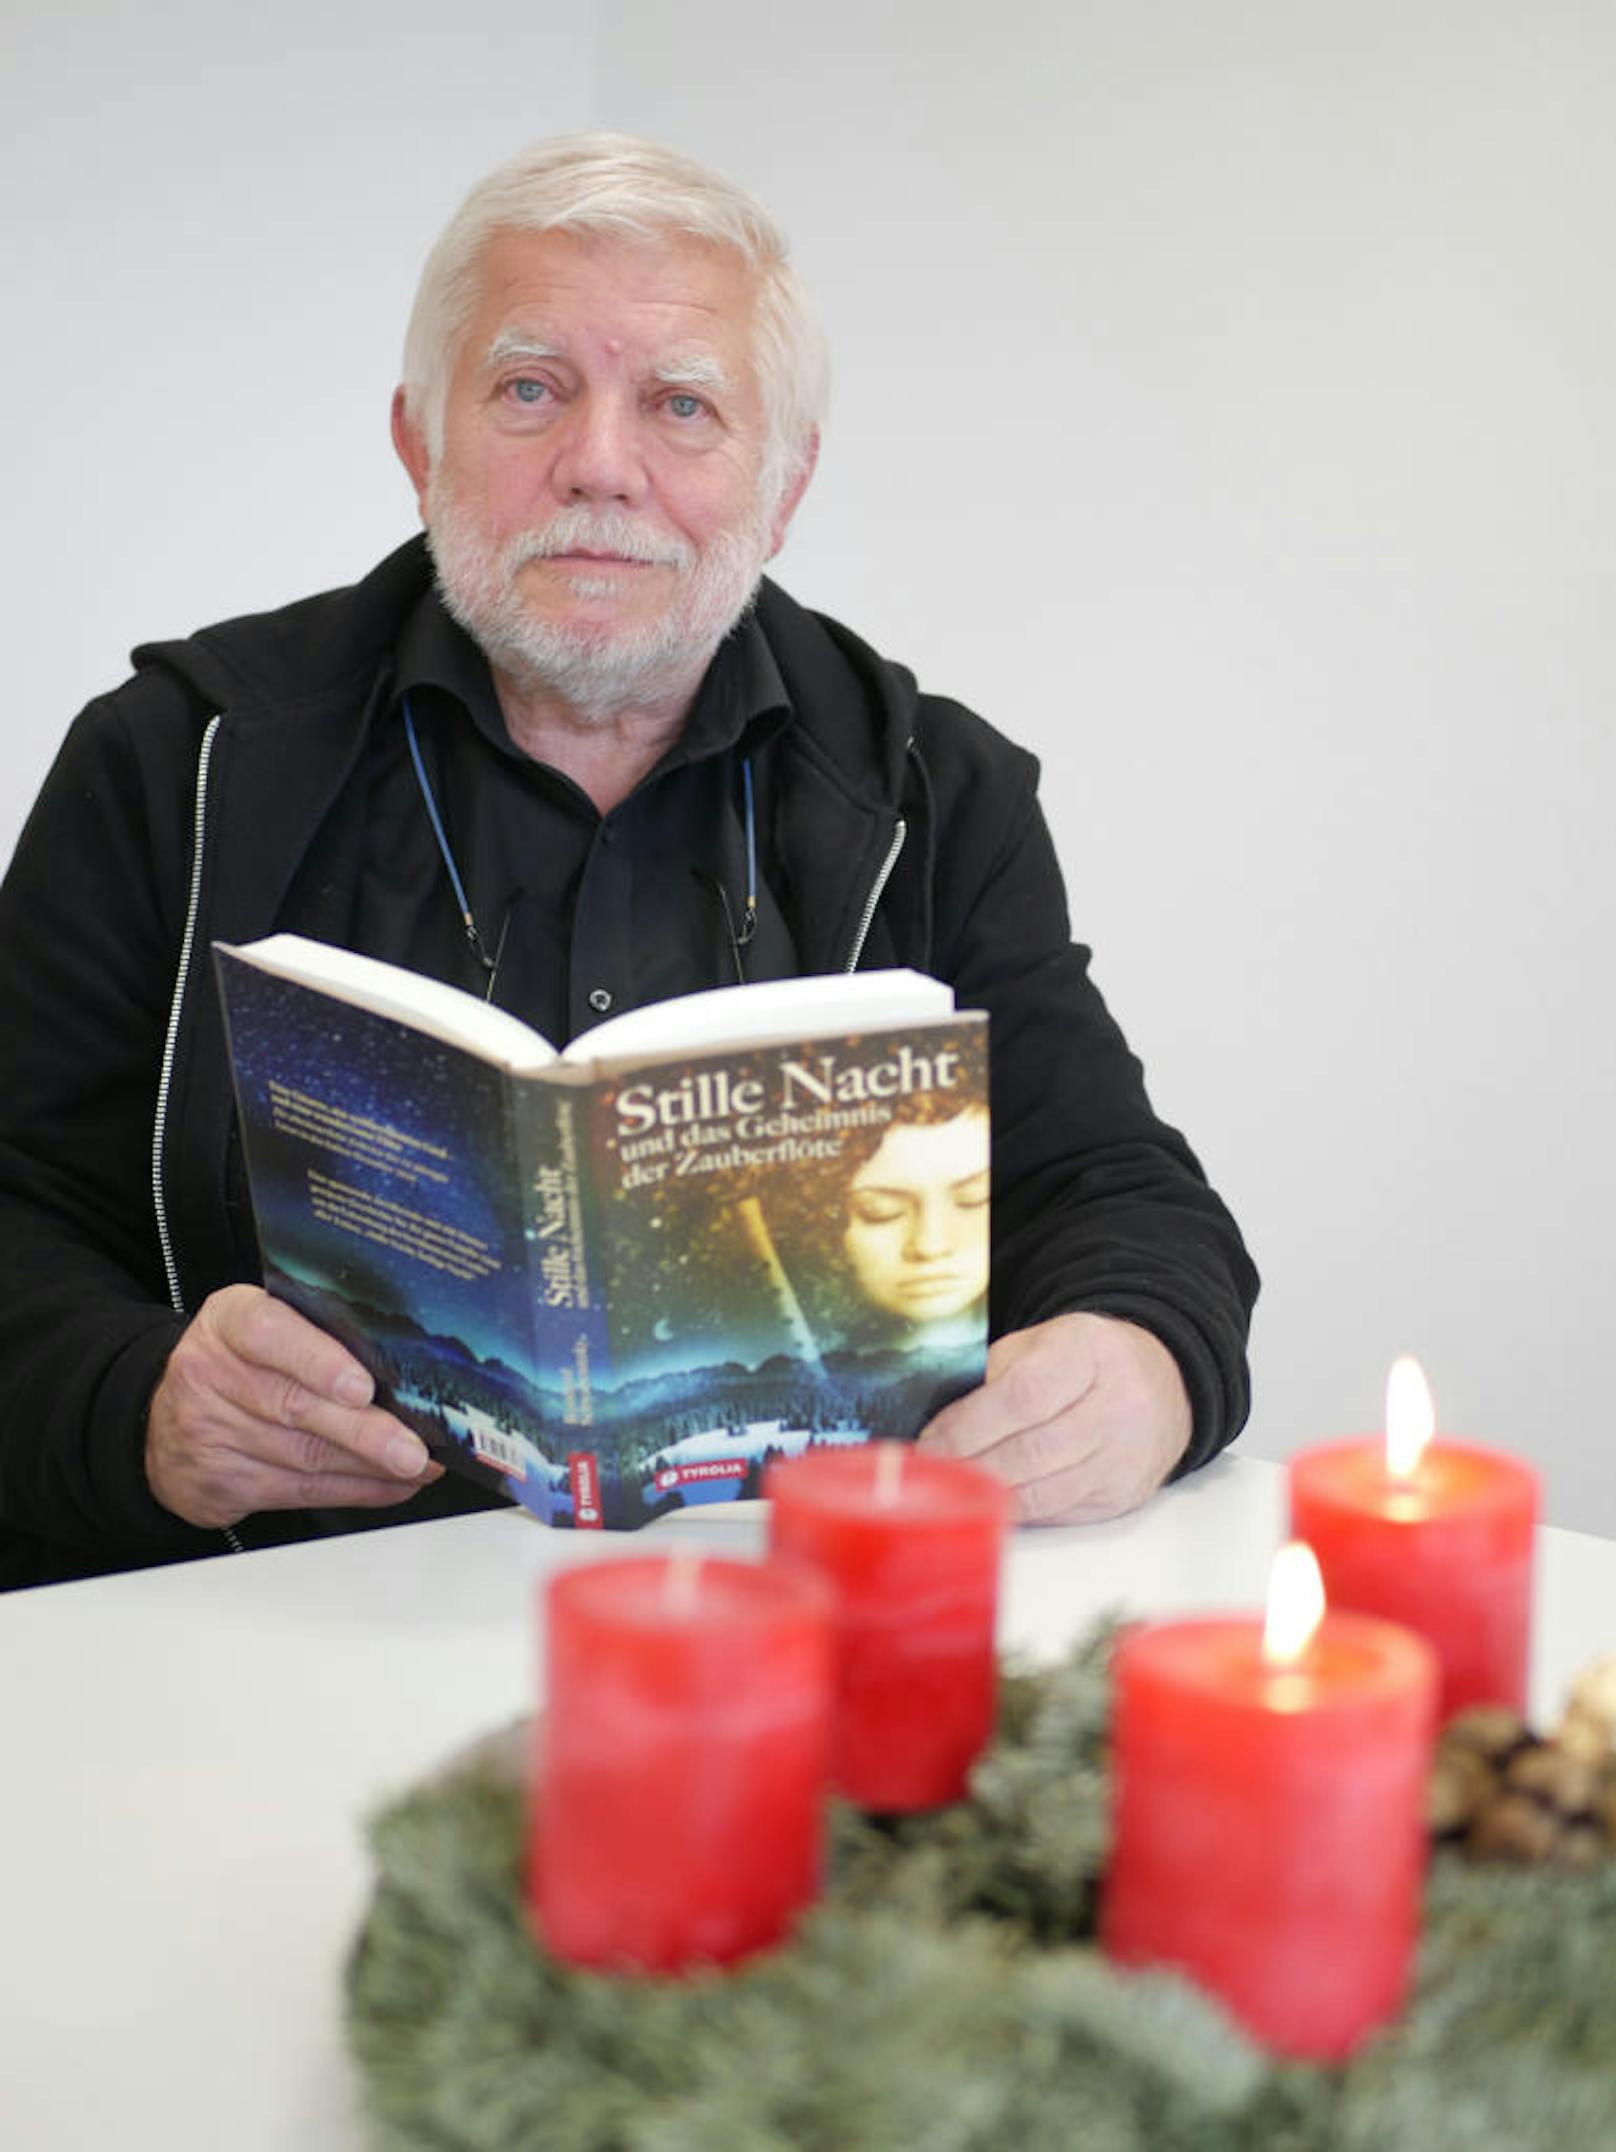 Reinhard Schwabenitzky stellt sein erstes Buch "Stille Nacht und das Geheimnis der Zauberflöte" vor.